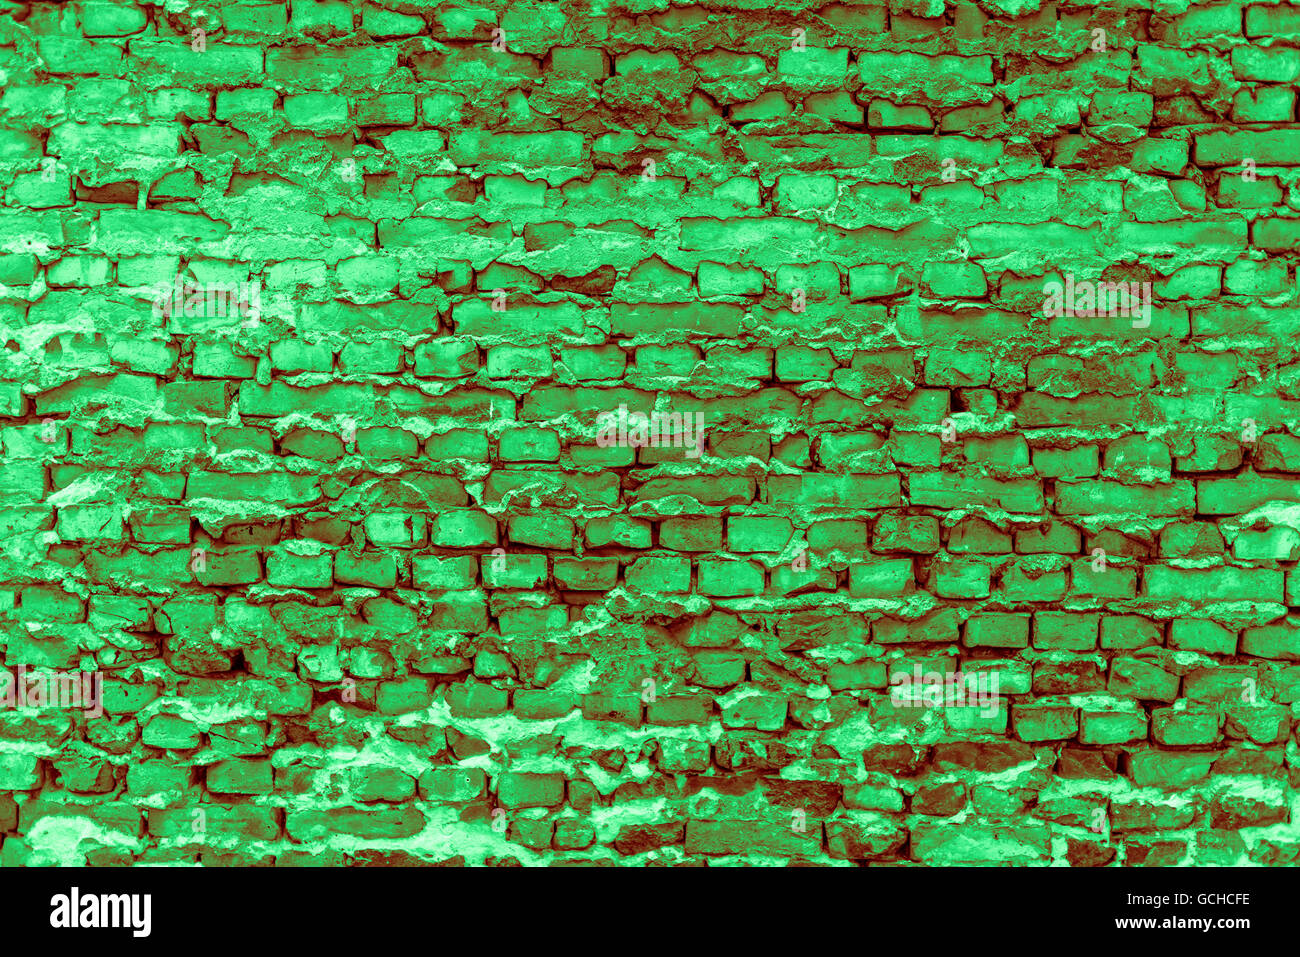 La metropolitana di Berlino a parete con vecchi mattoni e colori di luce verde scuro rossiccio colore verdolino Foto Stock